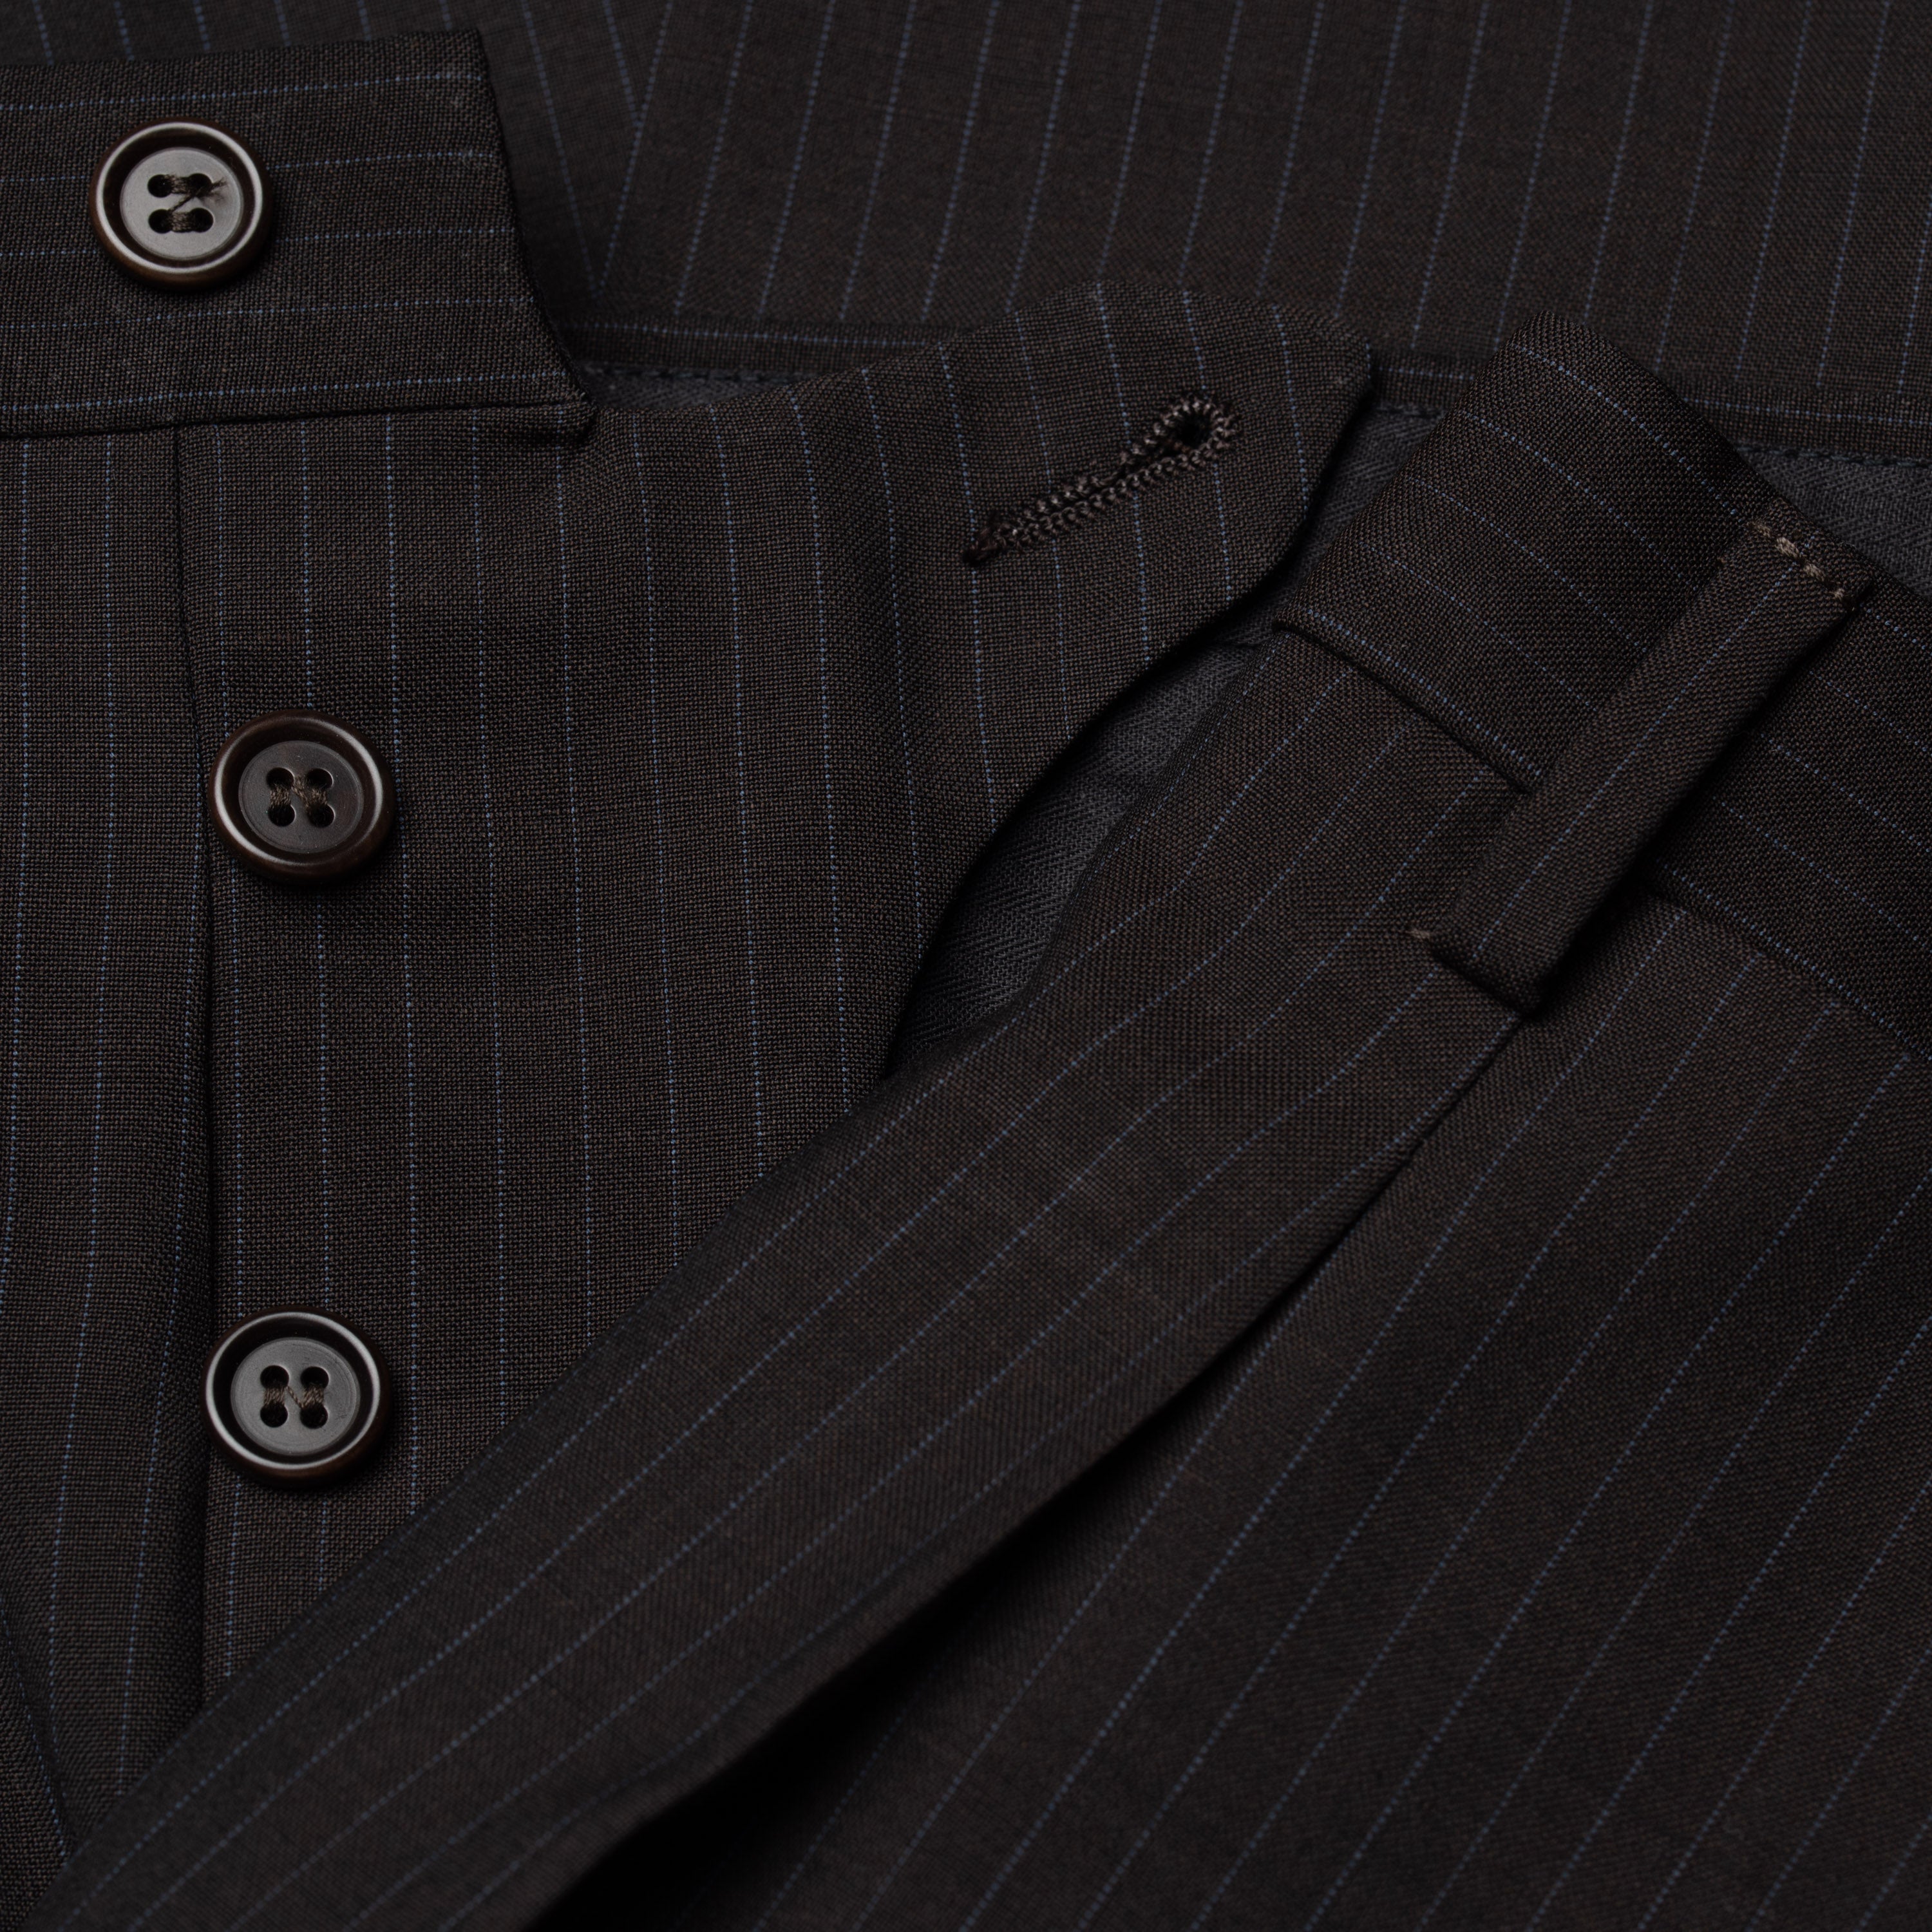 SARTORIA CASTANGIA Handmade Dark Gray Striped Wool Suit EU 48 NEW US 38 CASTANGIA